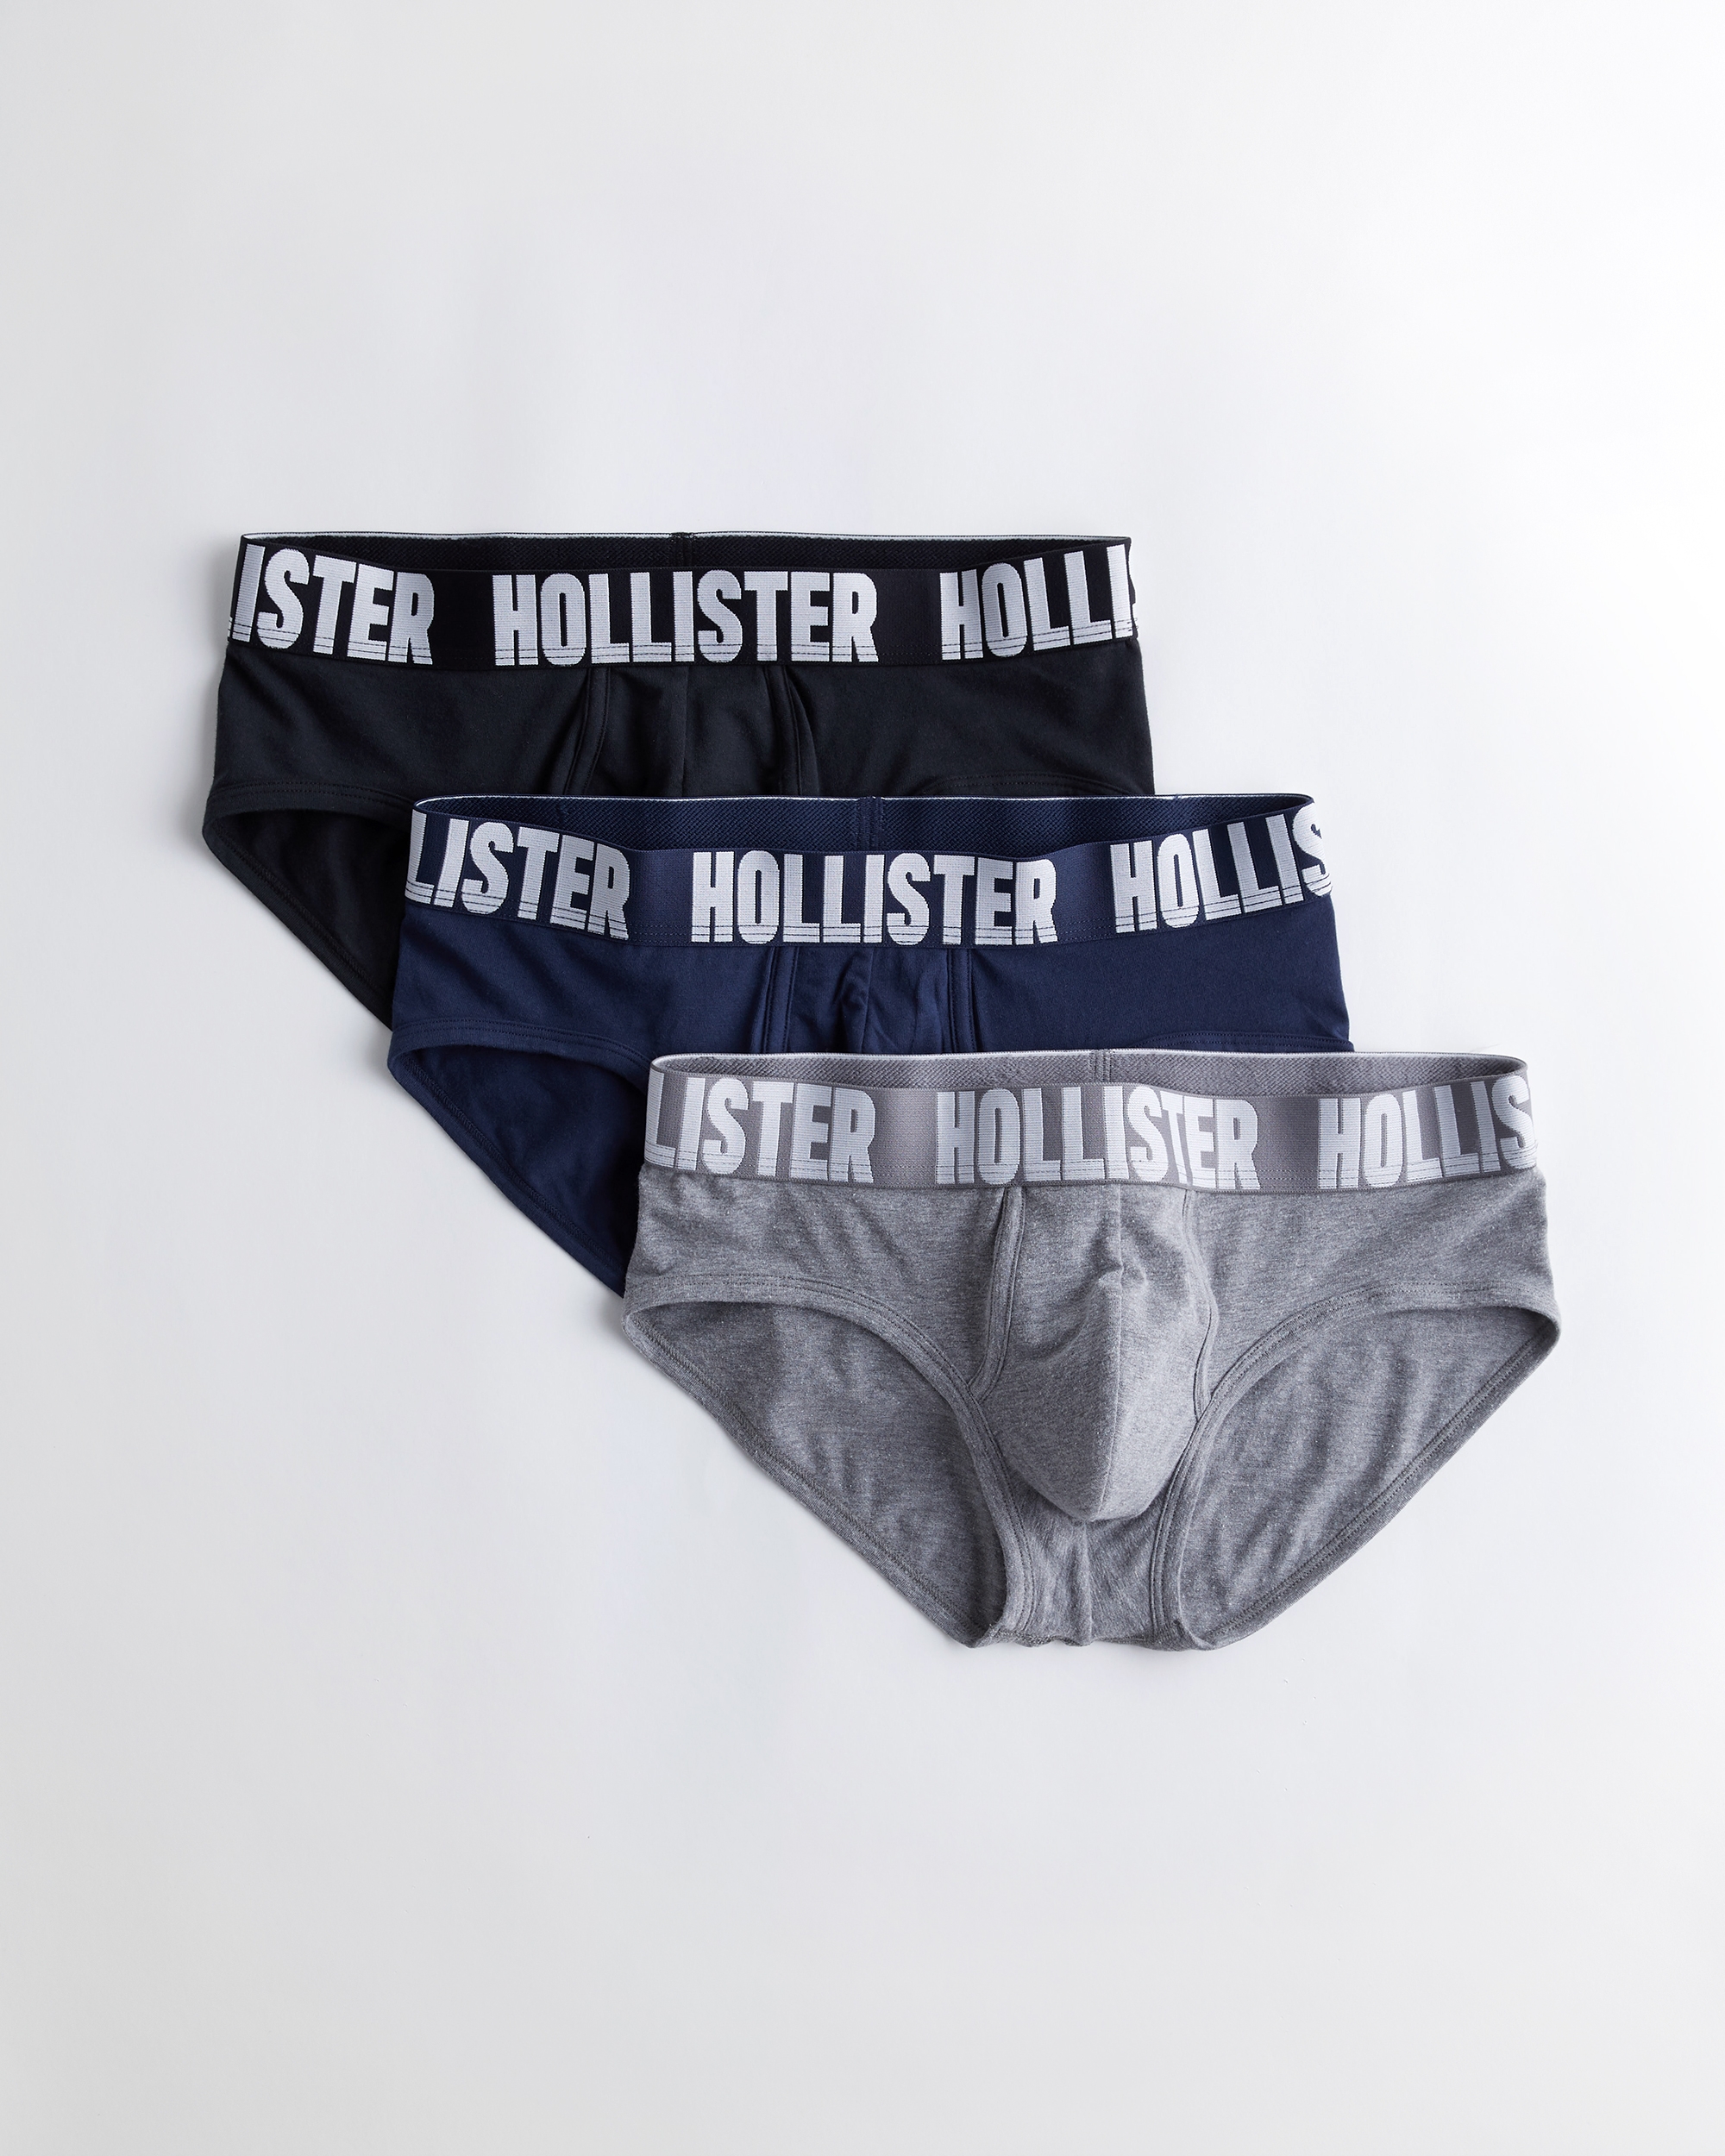 hollister mens underwear sale